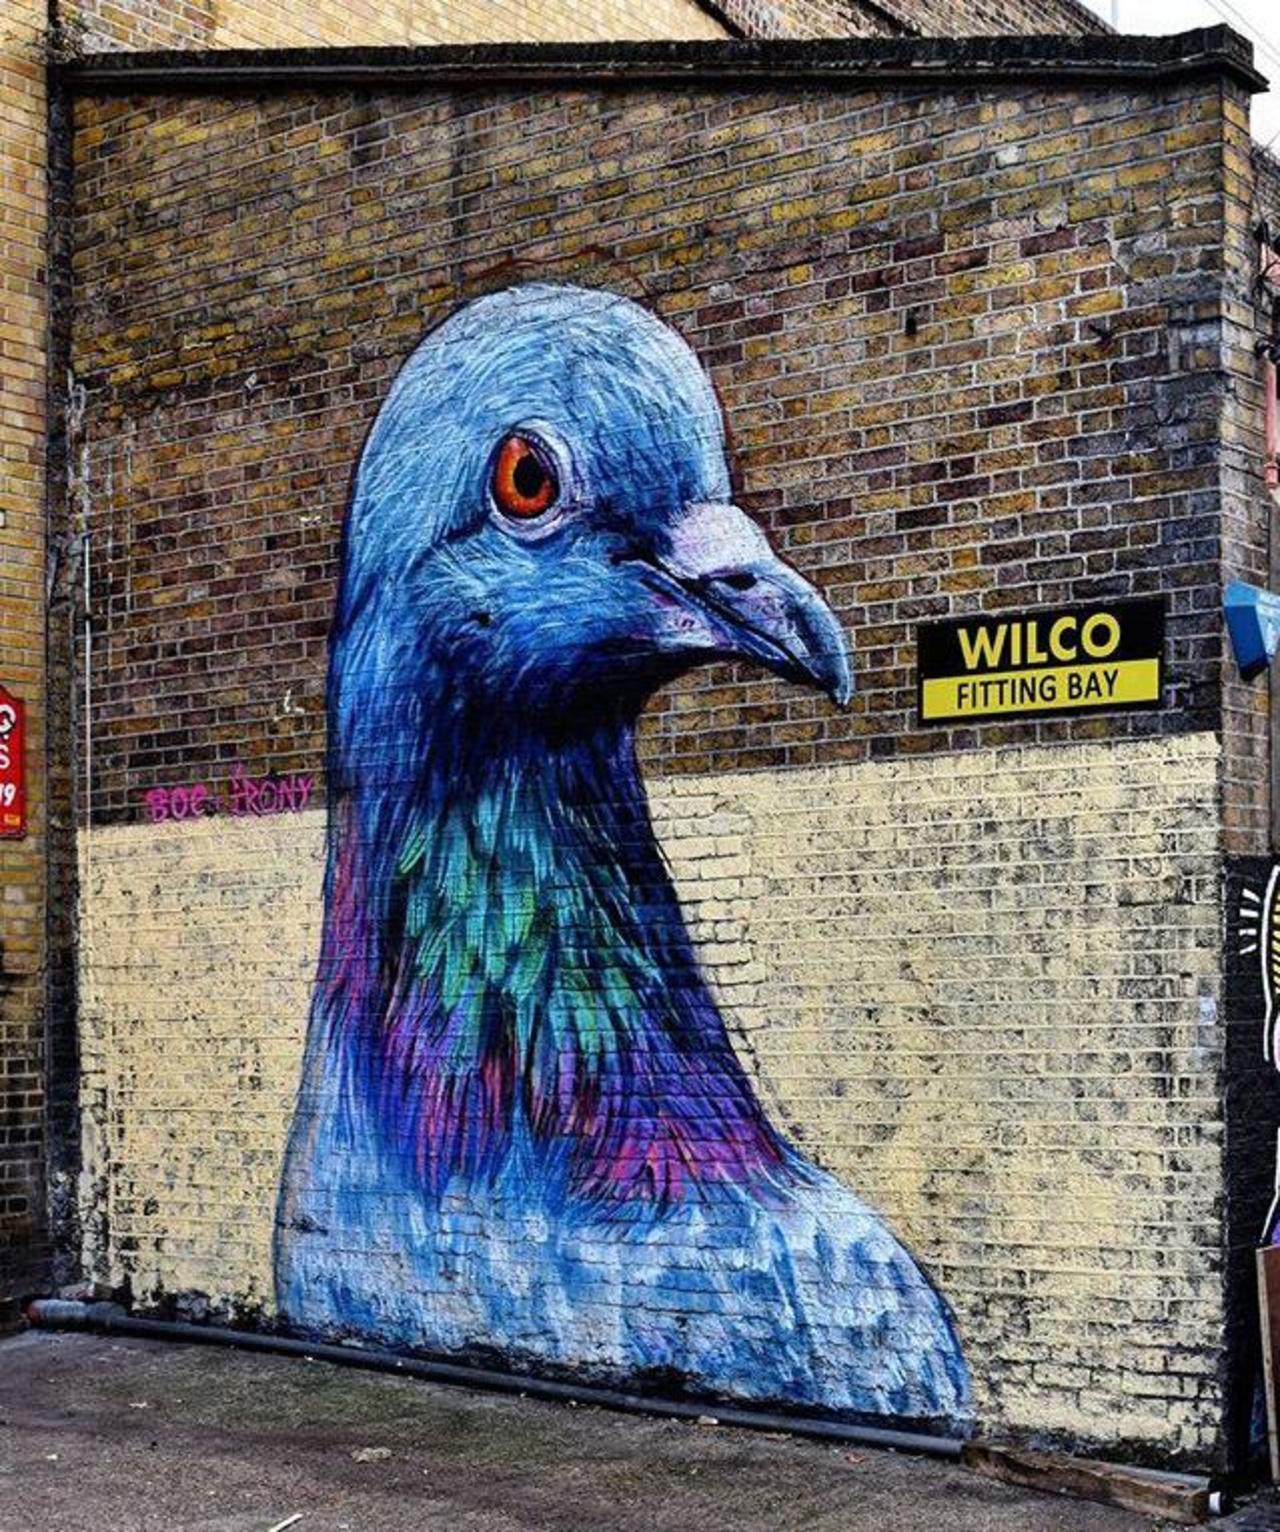 Street Art by Placee Boe & whoamirony in London 

#art #graffiti #mural #streetart http://t.co/qoPrpDCvZI